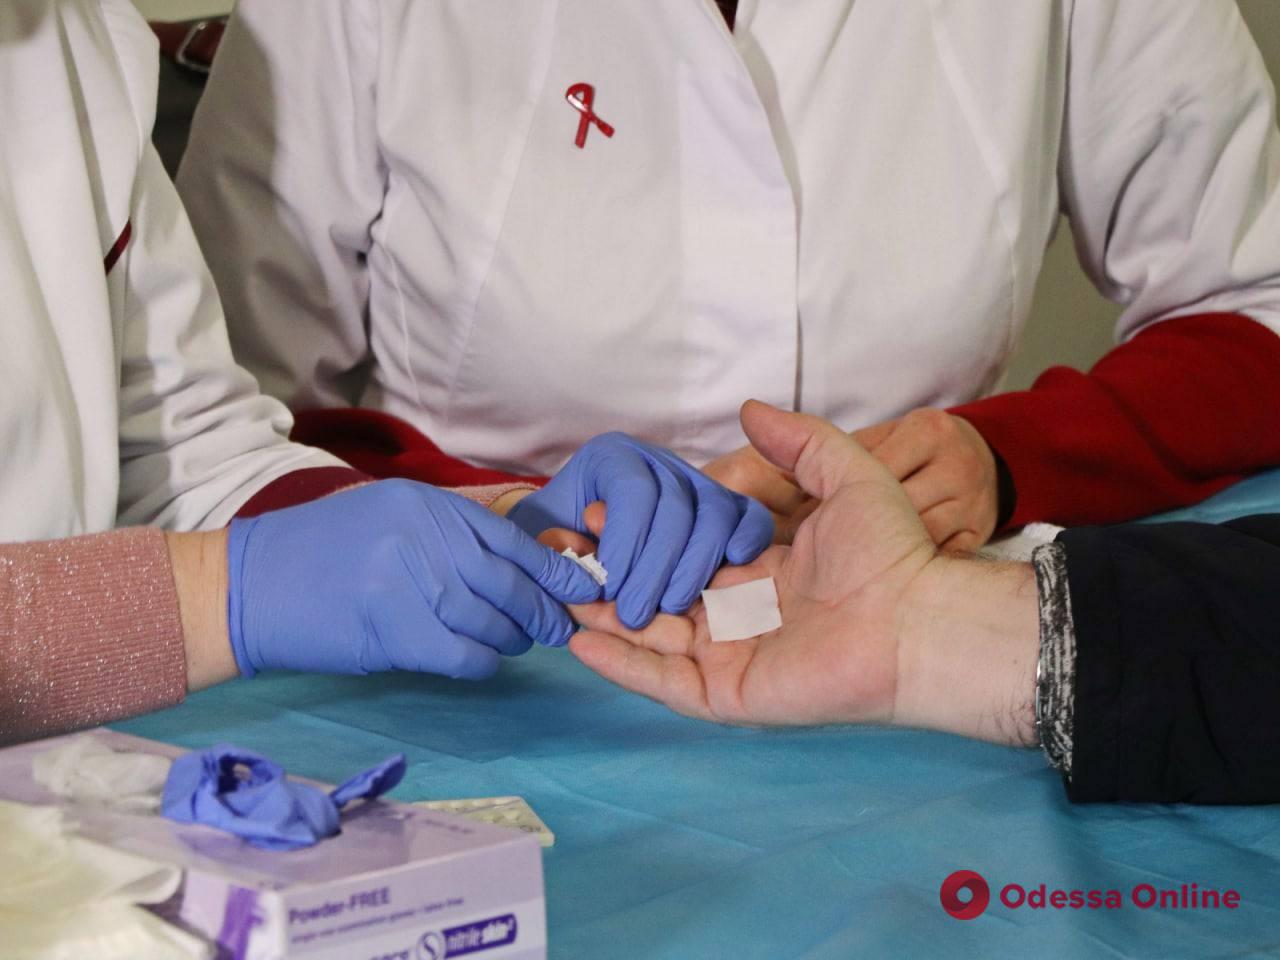 В одесских медучреждениях доступно бесплатное тестирование на ВИЧ через 15 минут